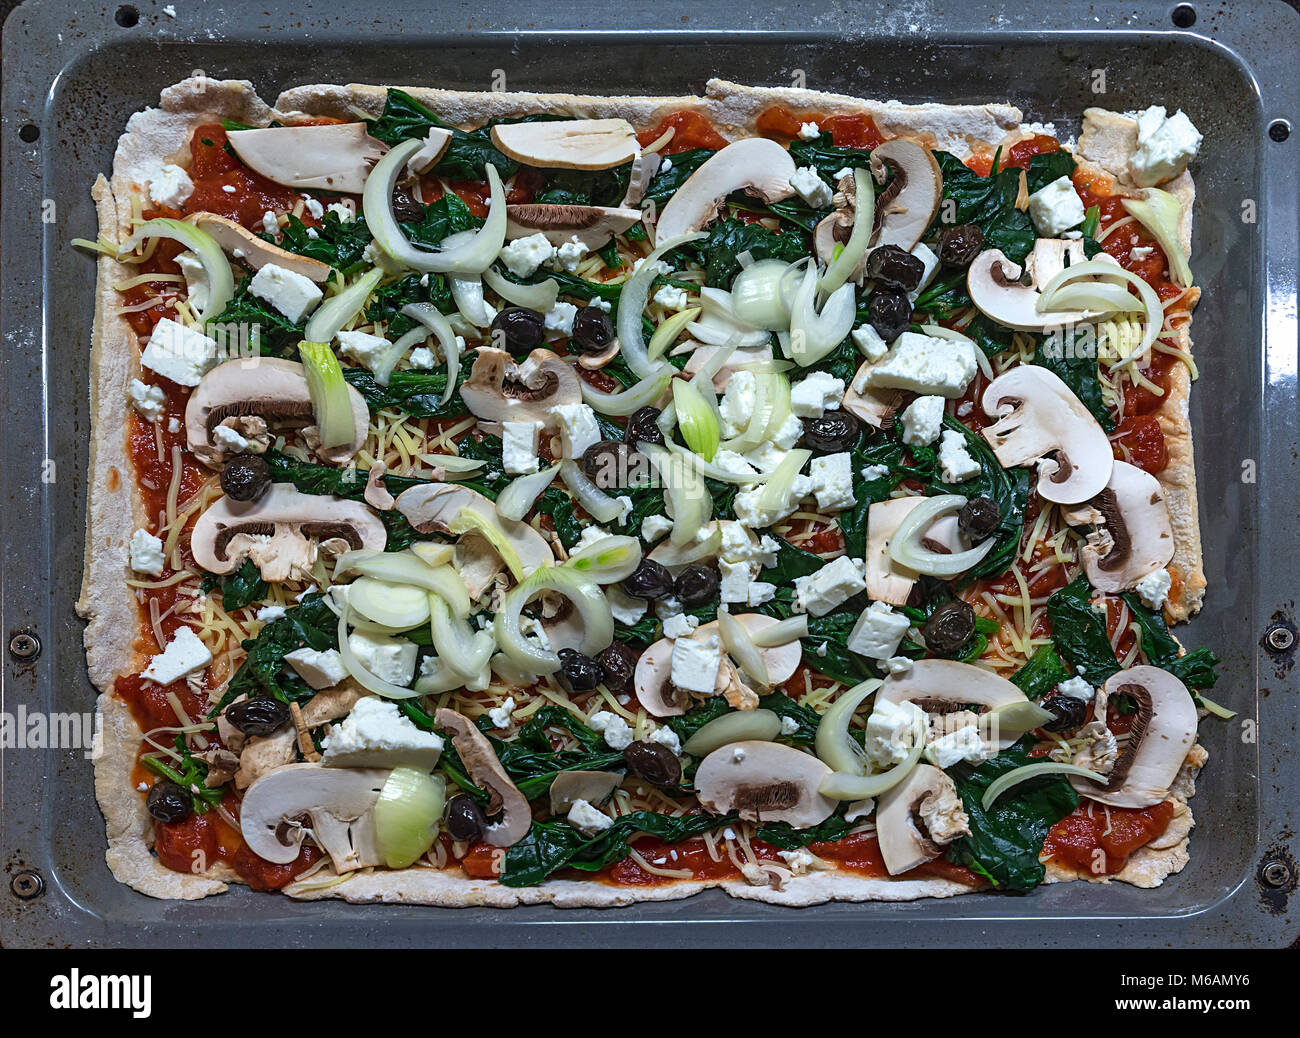 Pizza végétarienne sur une plaque de cuisson avant la cuisson, Allemagne Banque D'Images